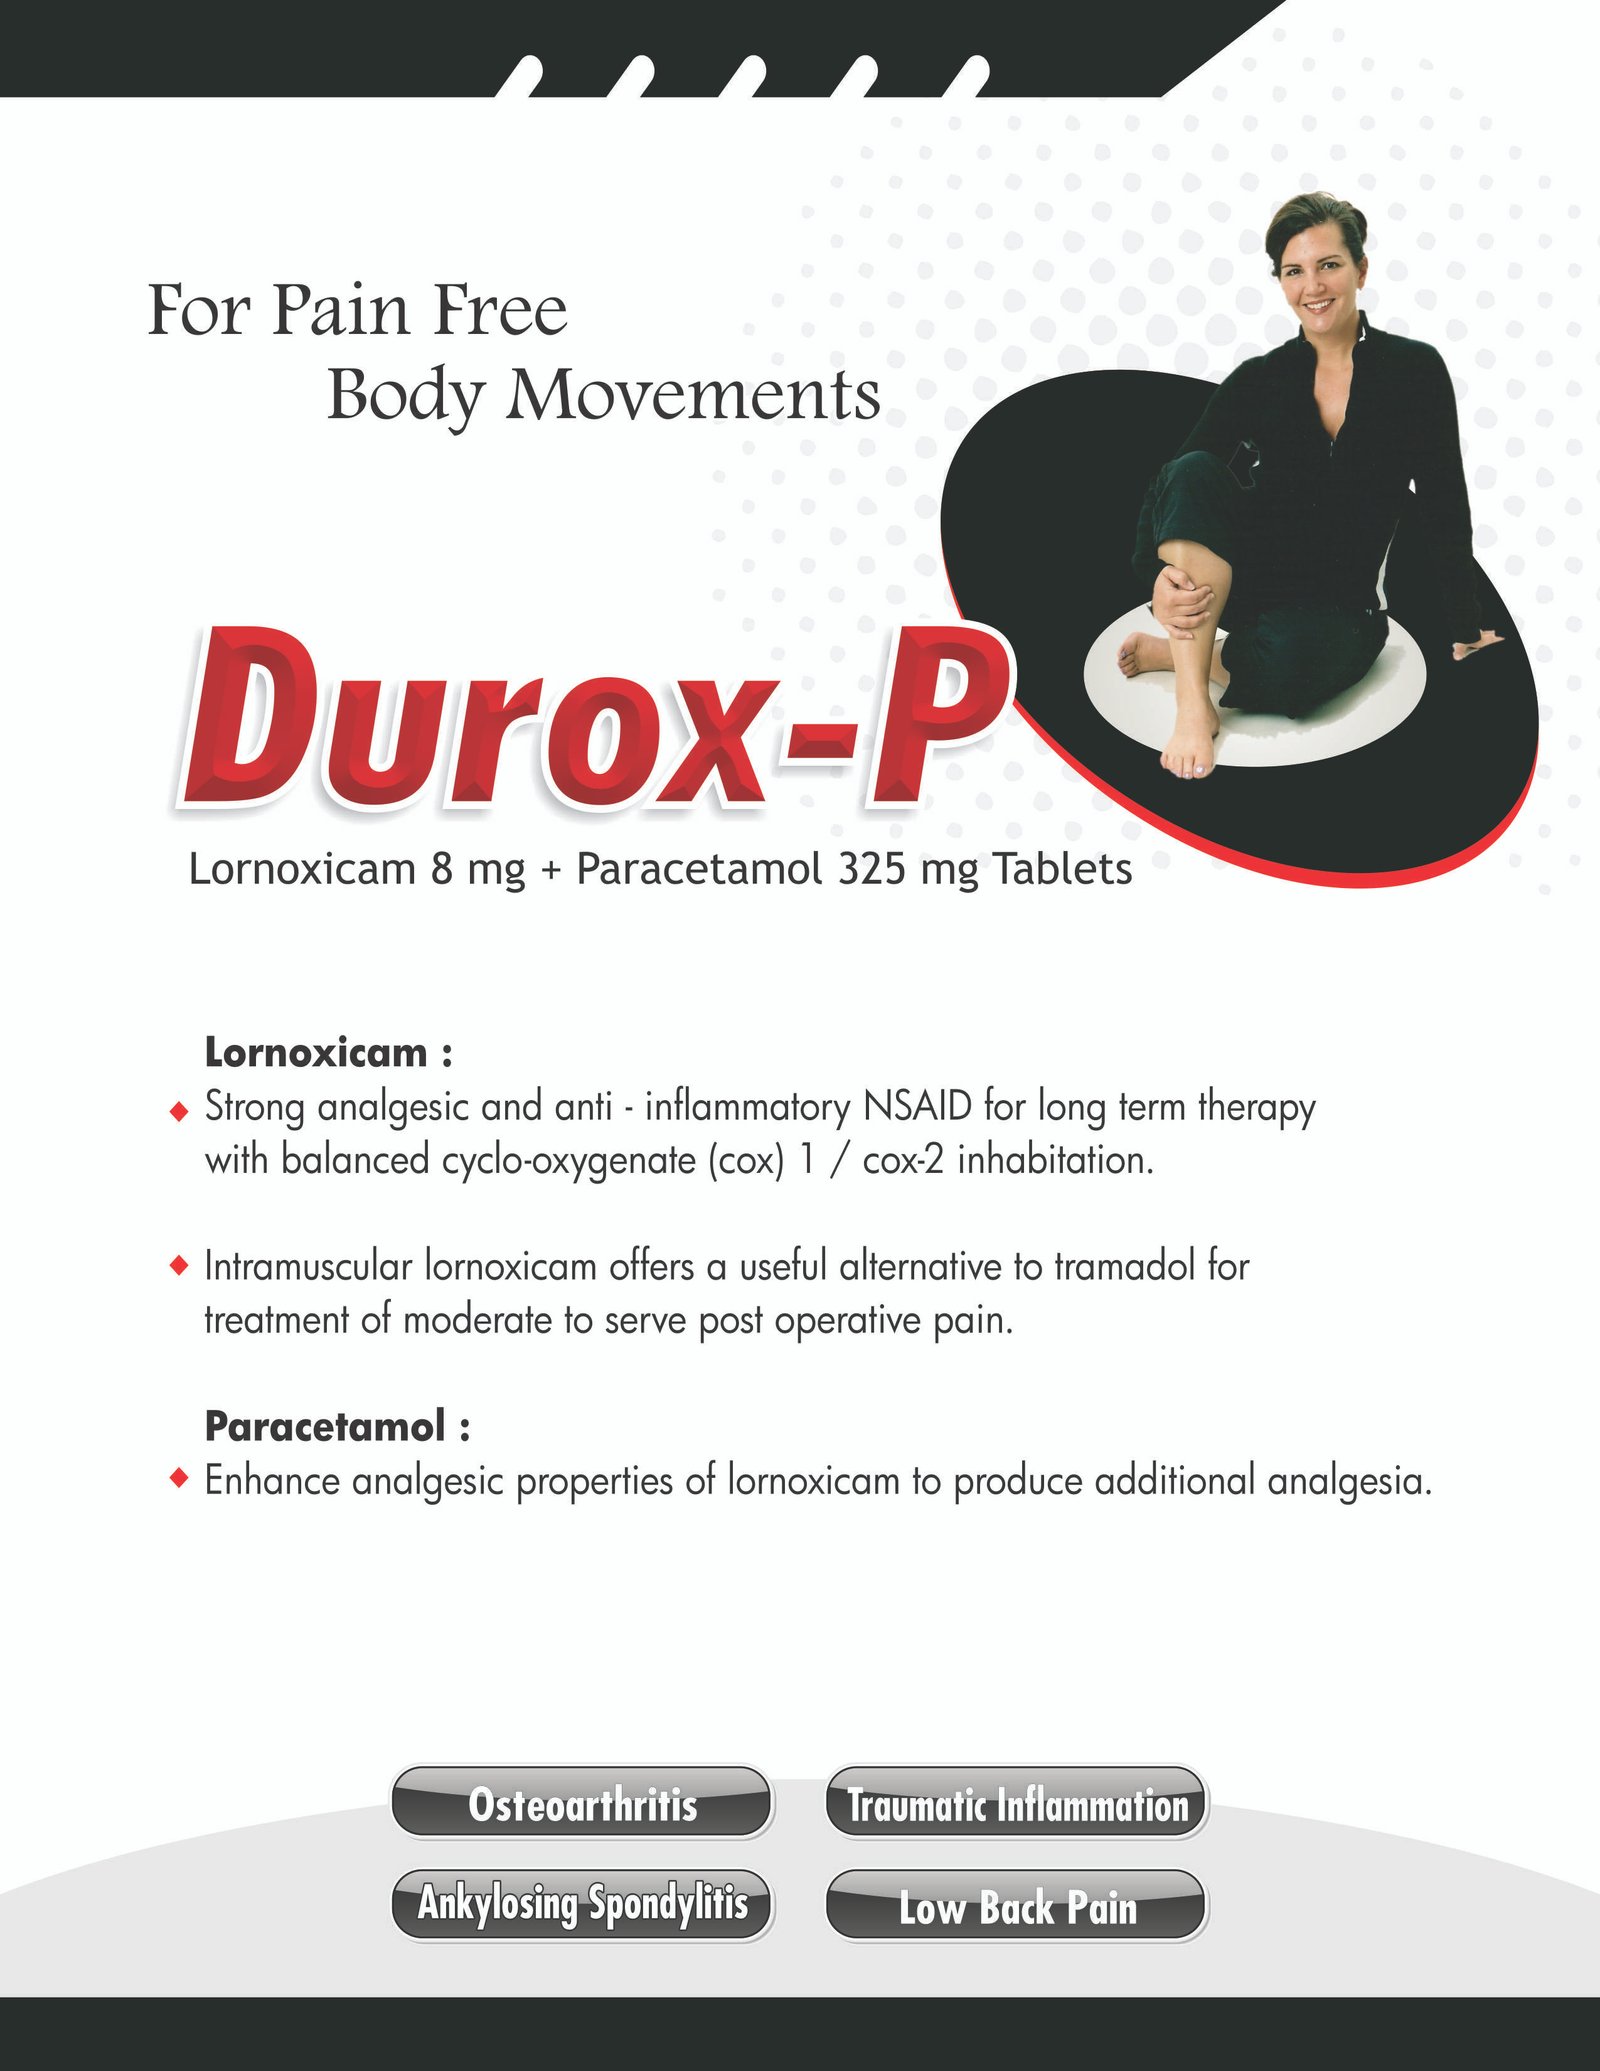 durox-p, DUROX-P, daksh pharmaceuticals,daksh pharma, daksh panchkula, pcd franchise,anti-inflamatory